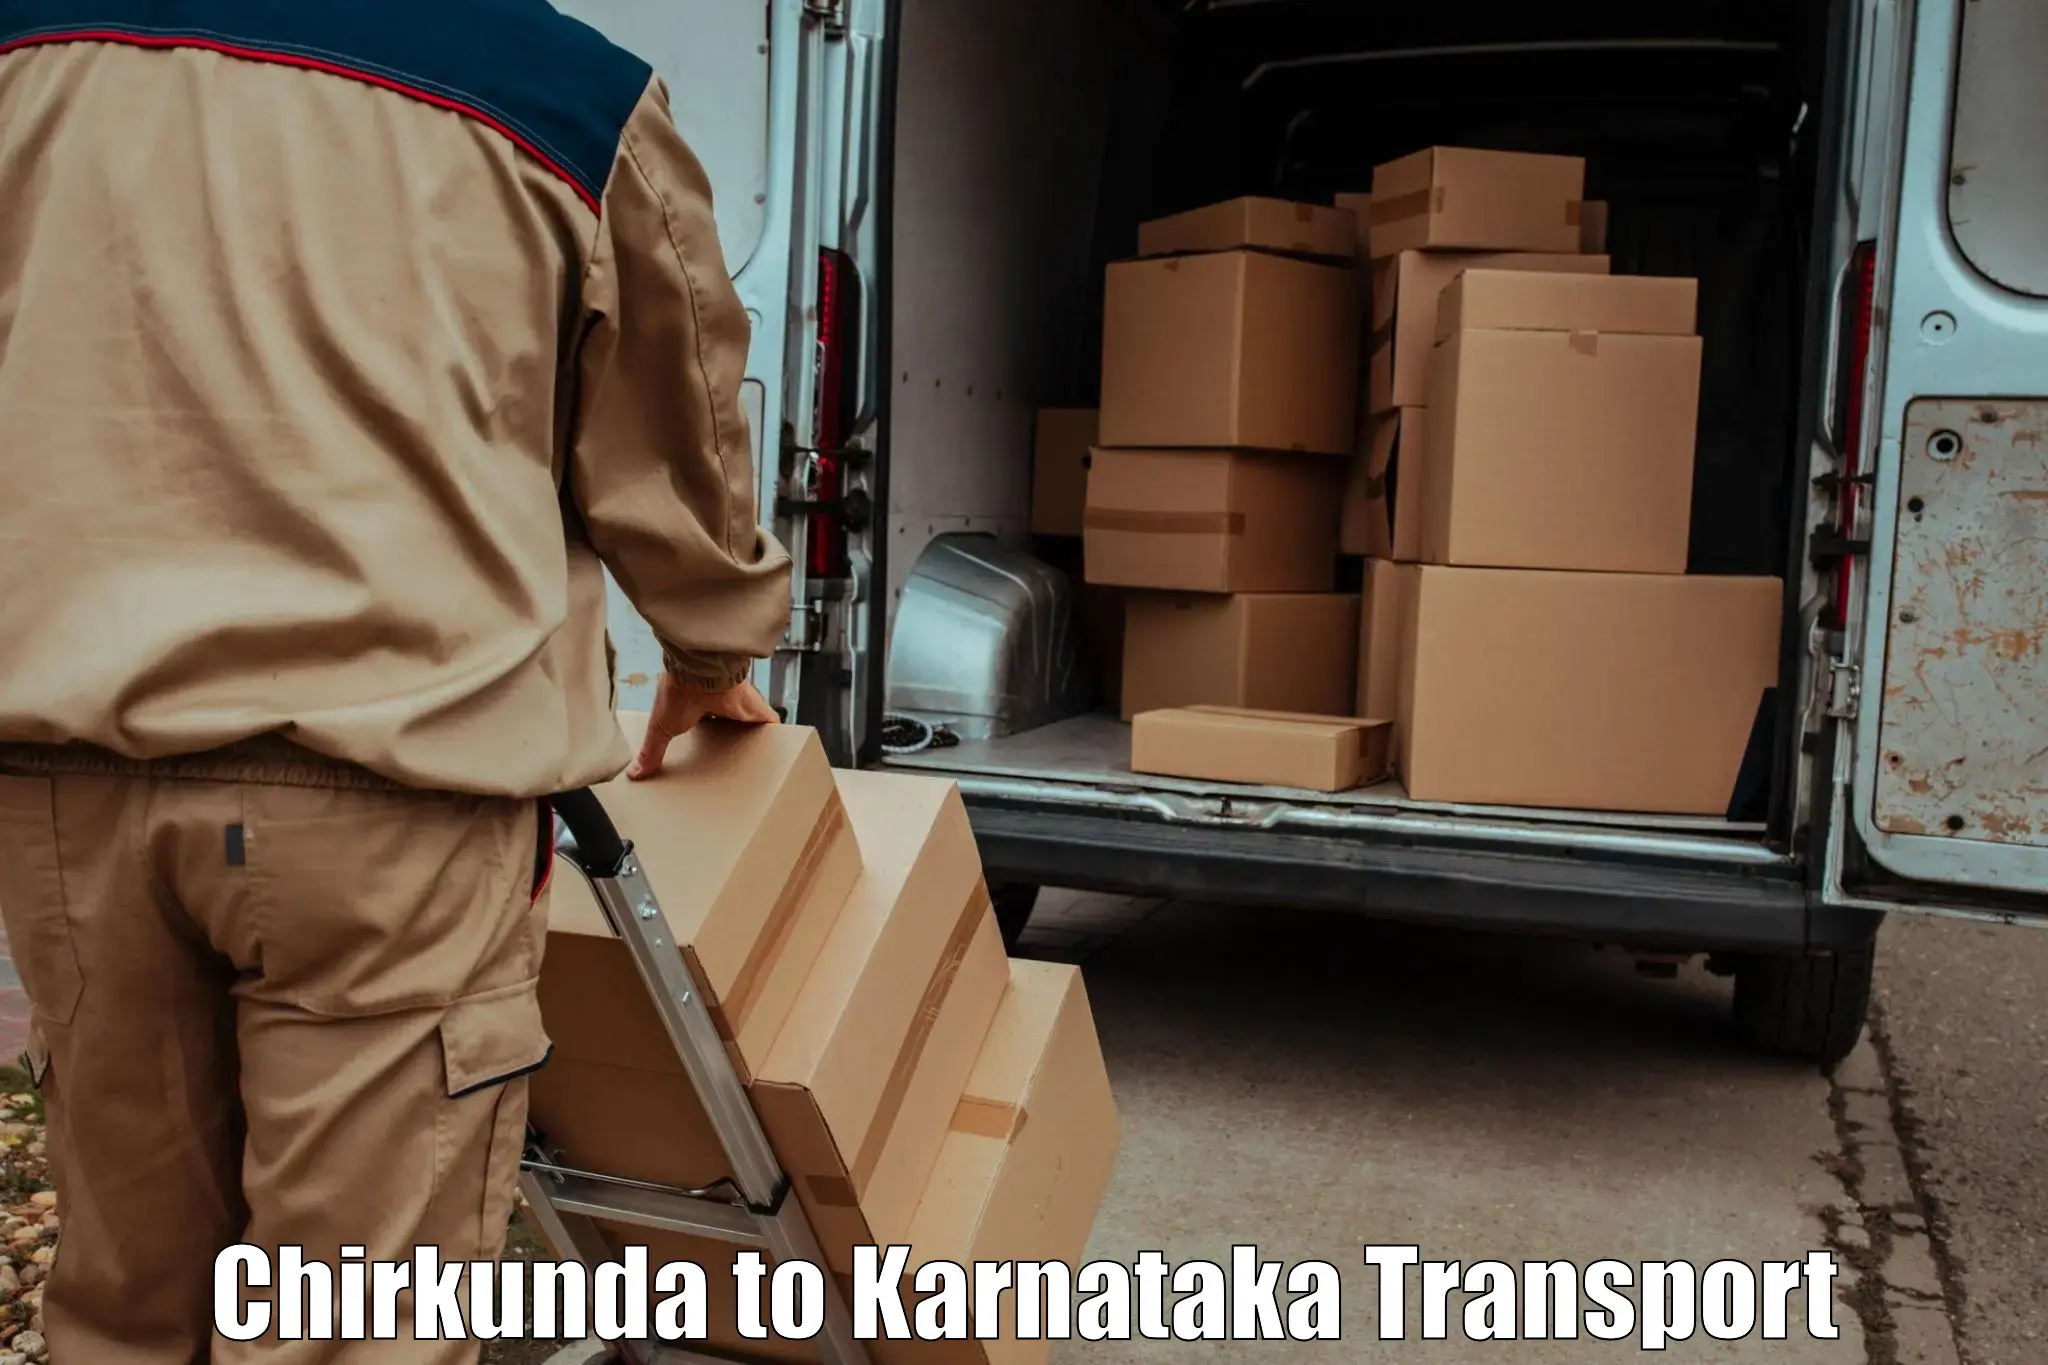 Transport in sharing Chirkunda to Surathkal